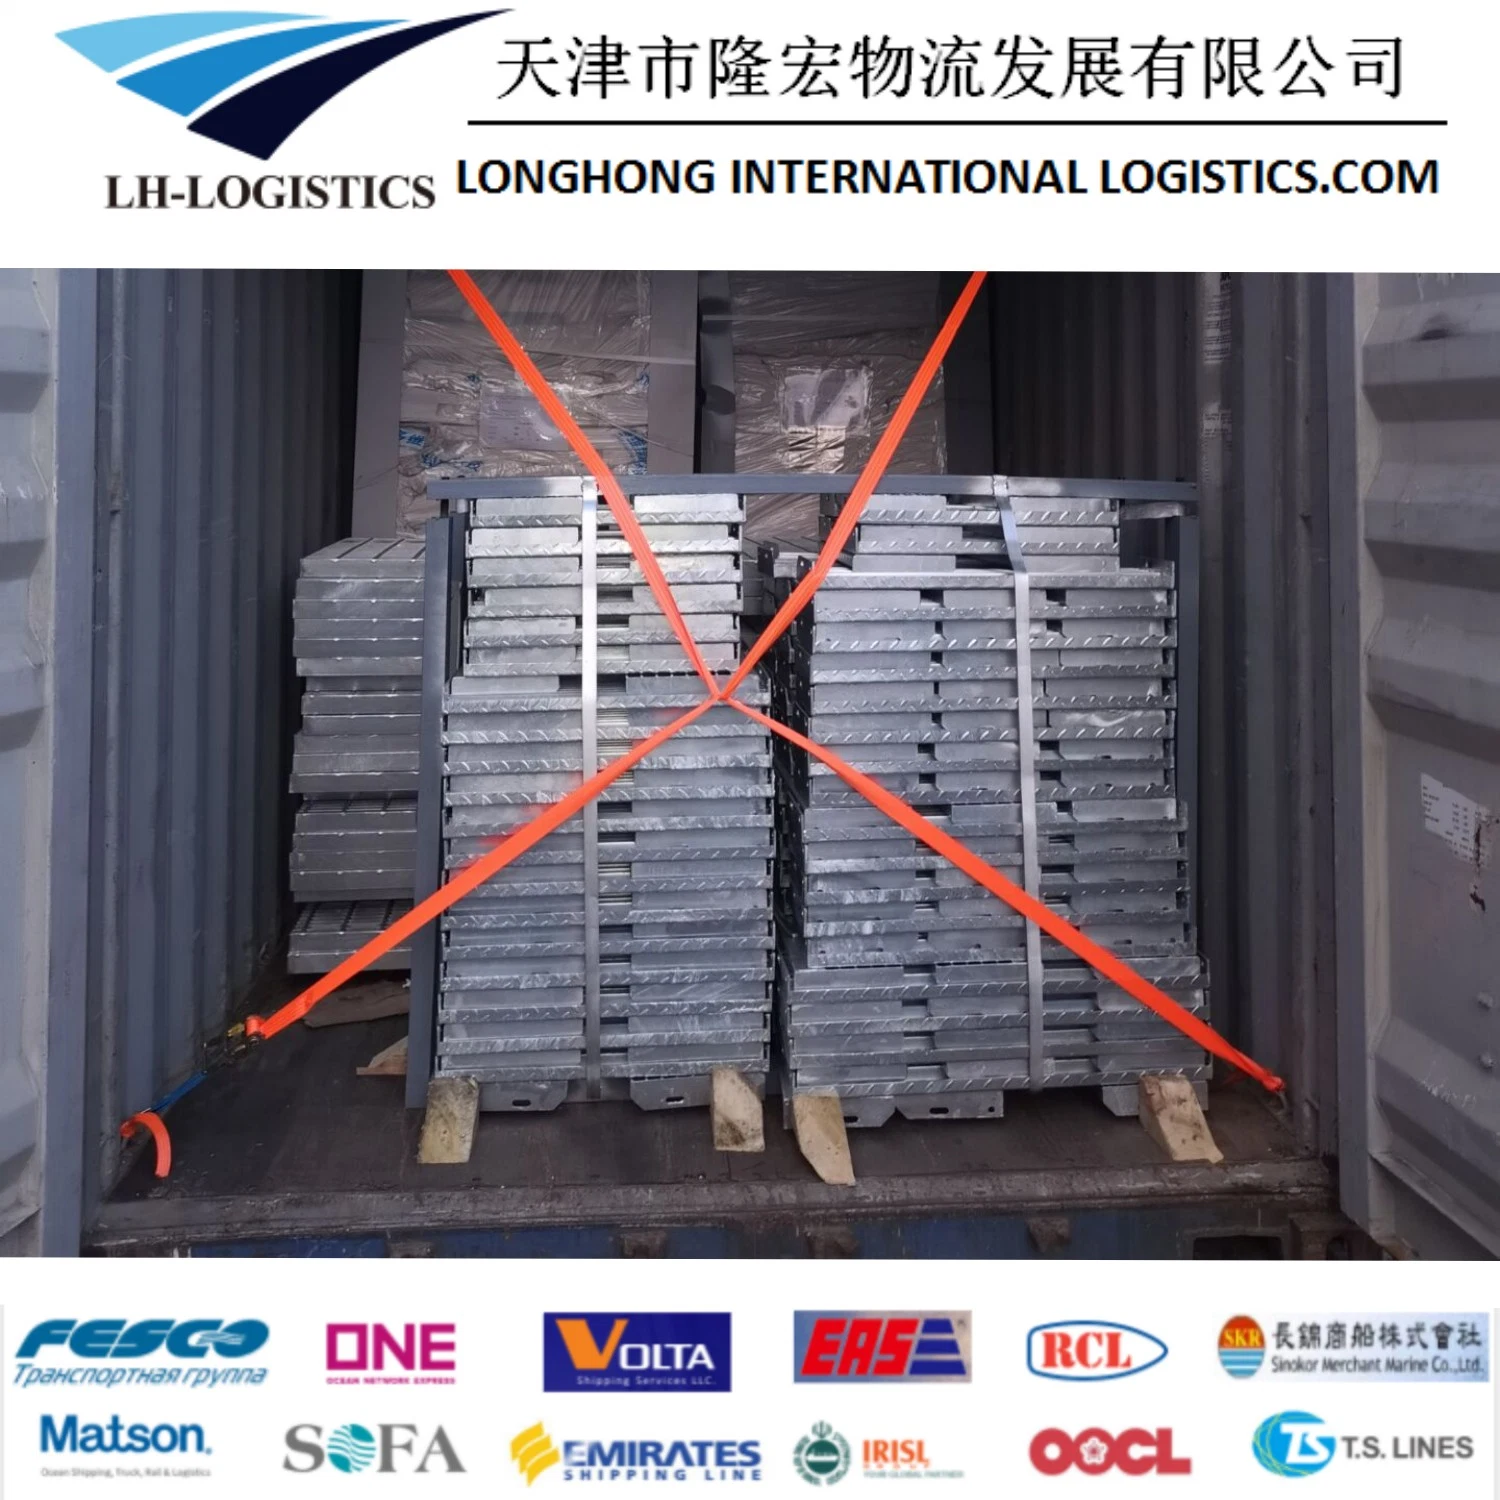 Tarifas de carga baratas Servicio de Logística de Envío Agente de China a. Croacia /Polonia/Francia/Europa